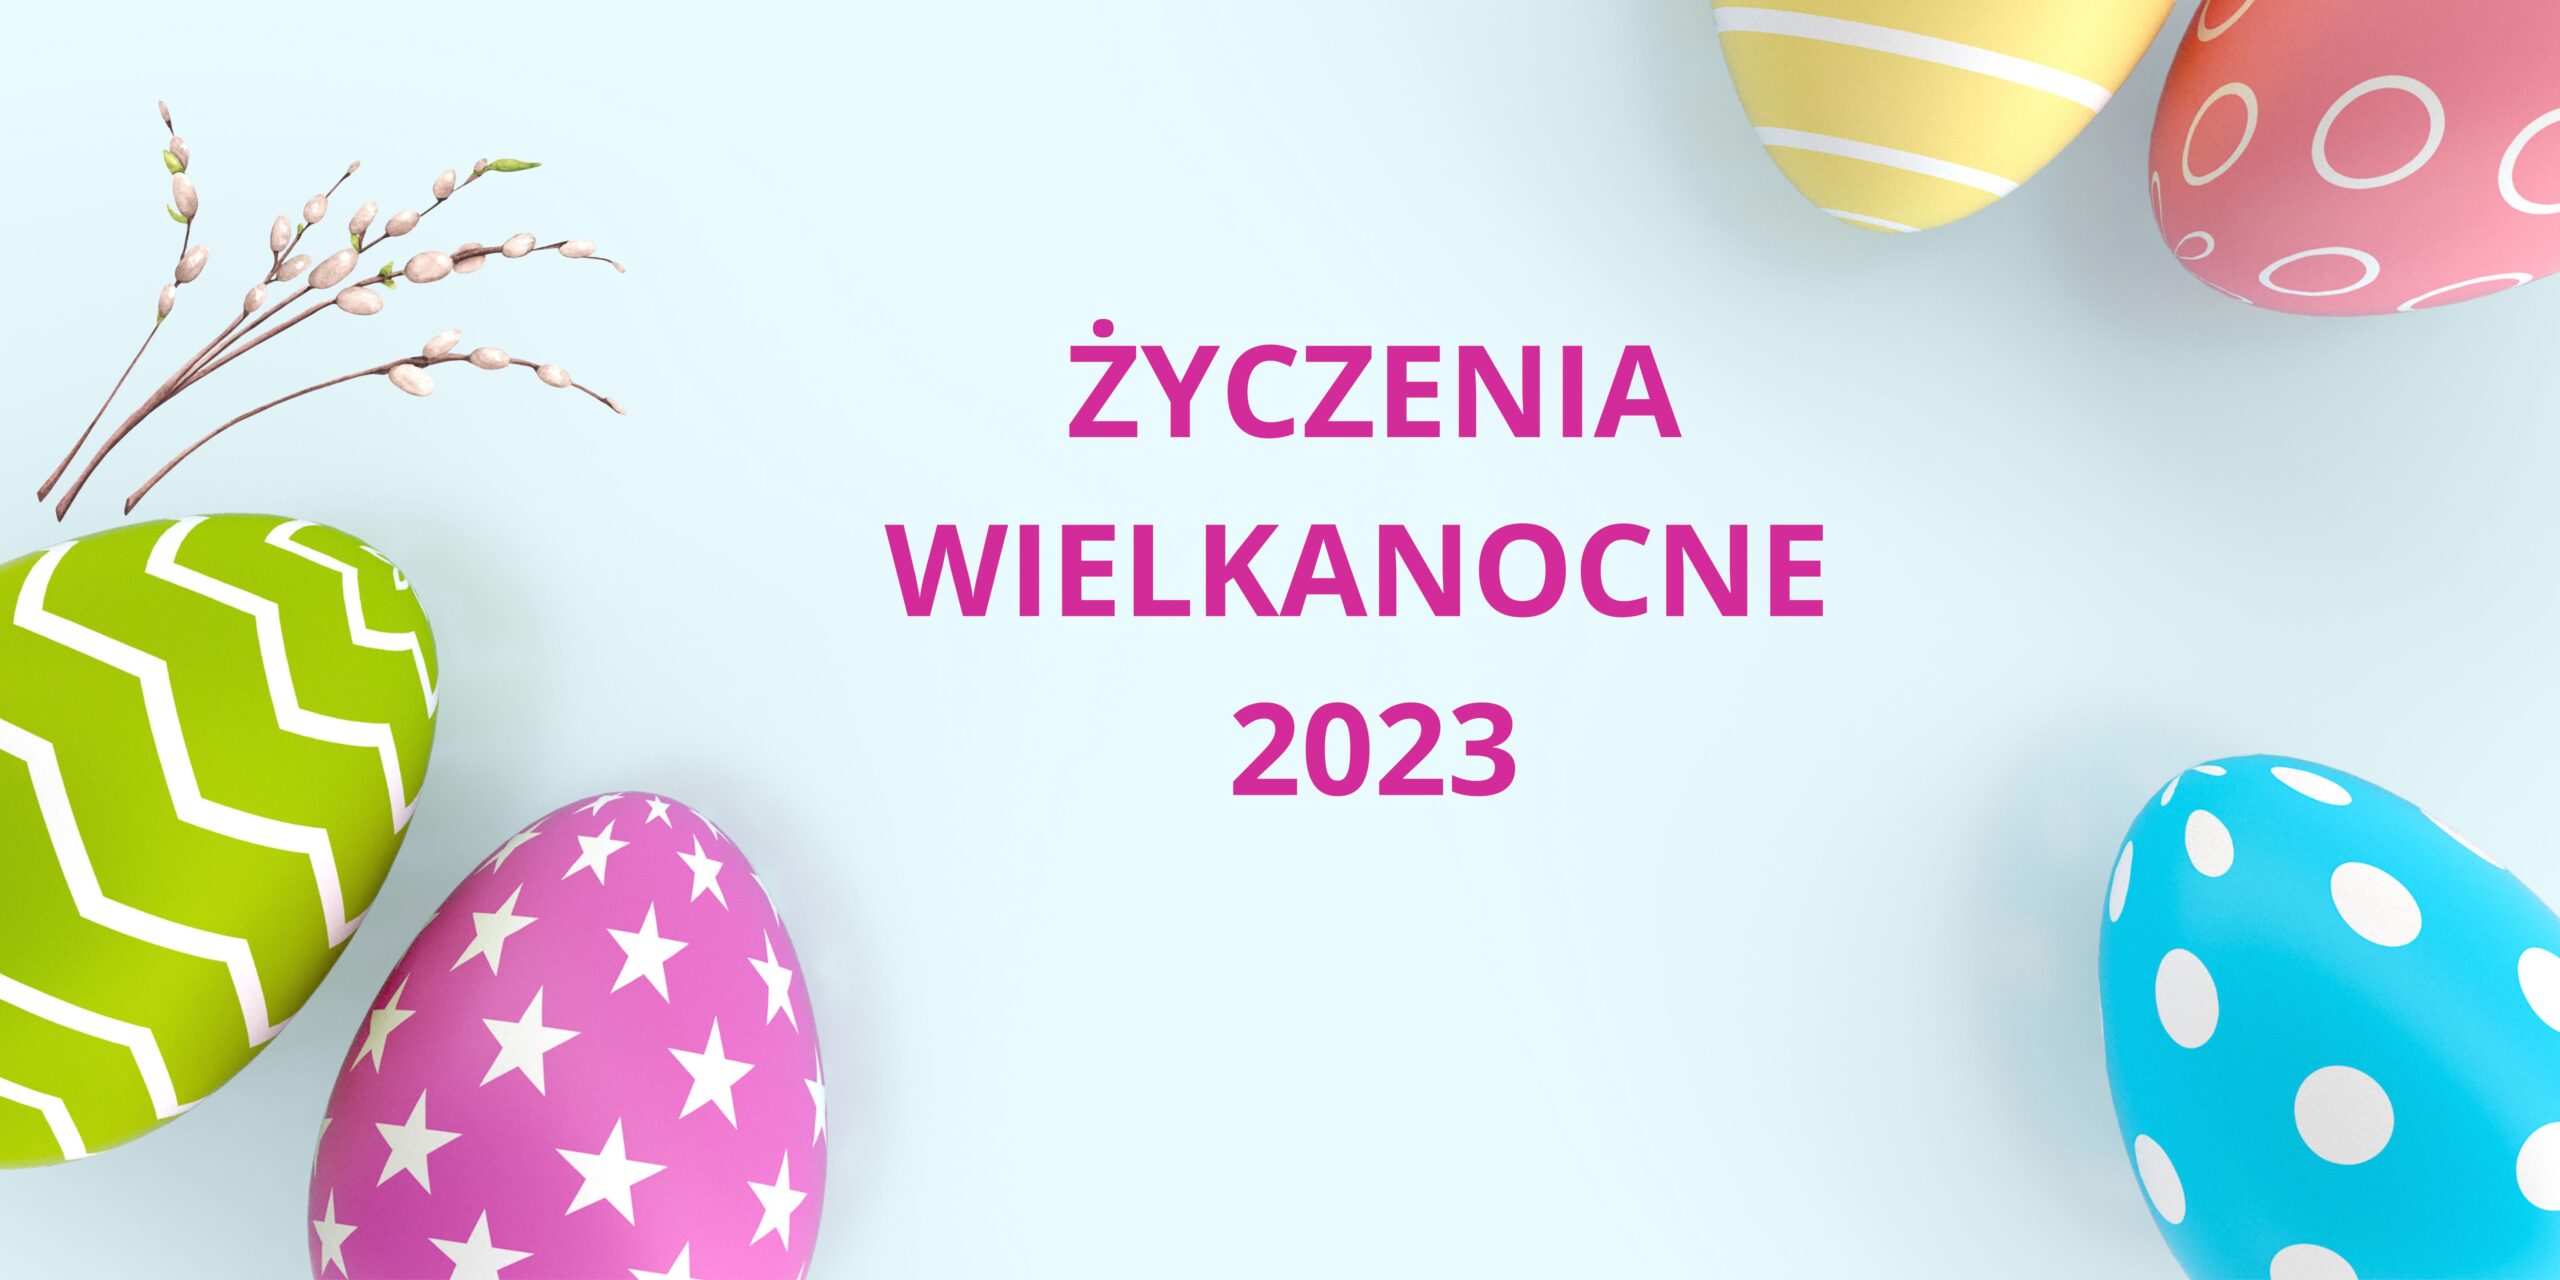 You are currently viewing ŻYCZENIA WIELKANOCNE 2023